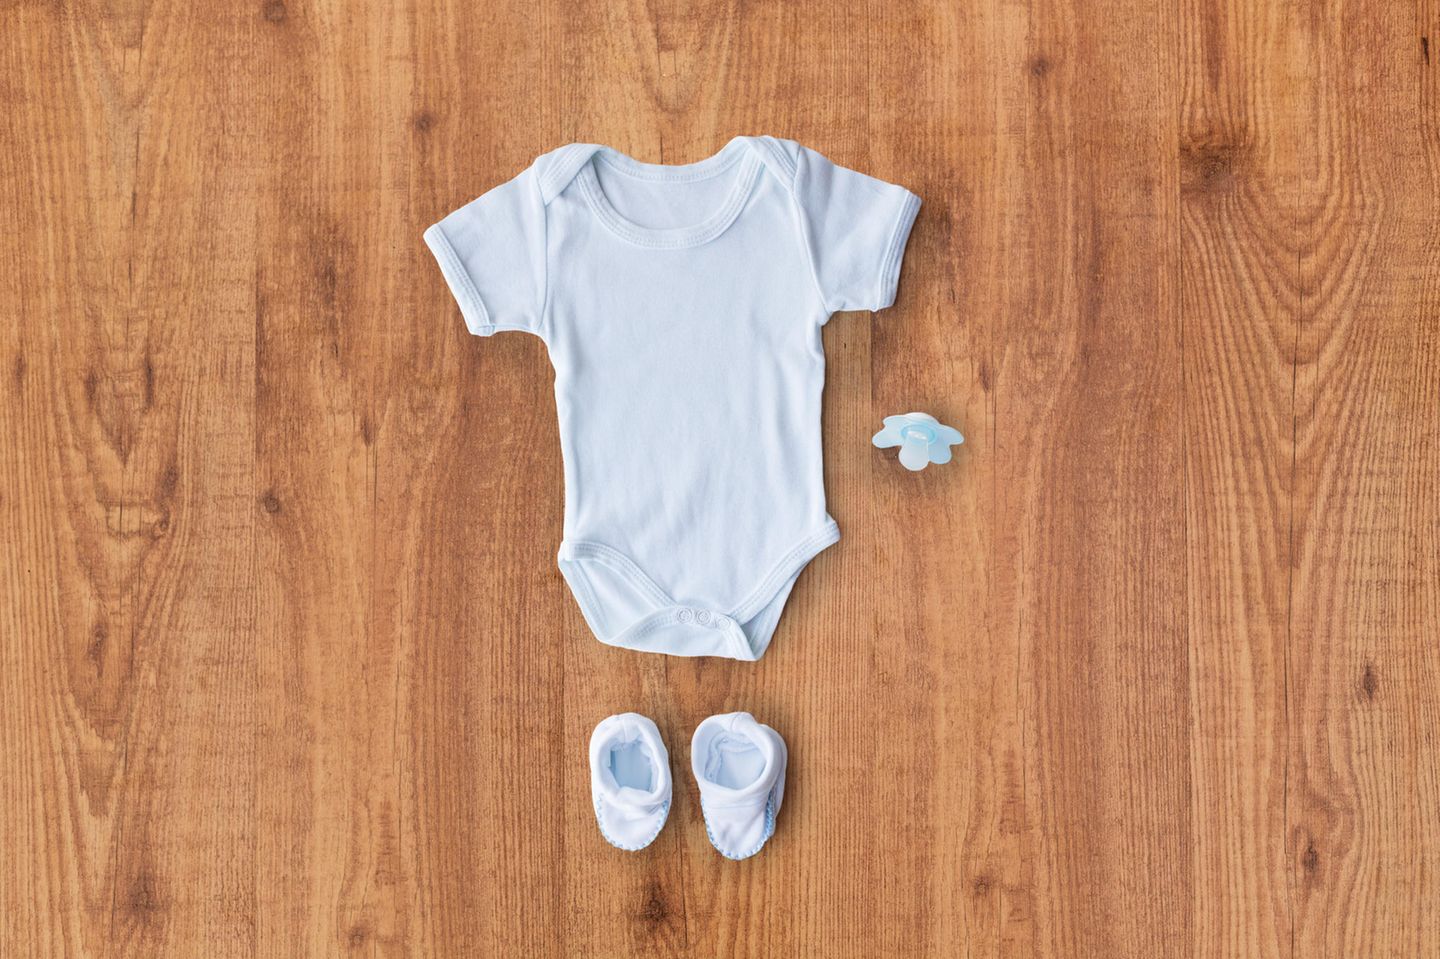 Nachhaltige Kleidung: Babyoutfit liegt auf einem Holztisch